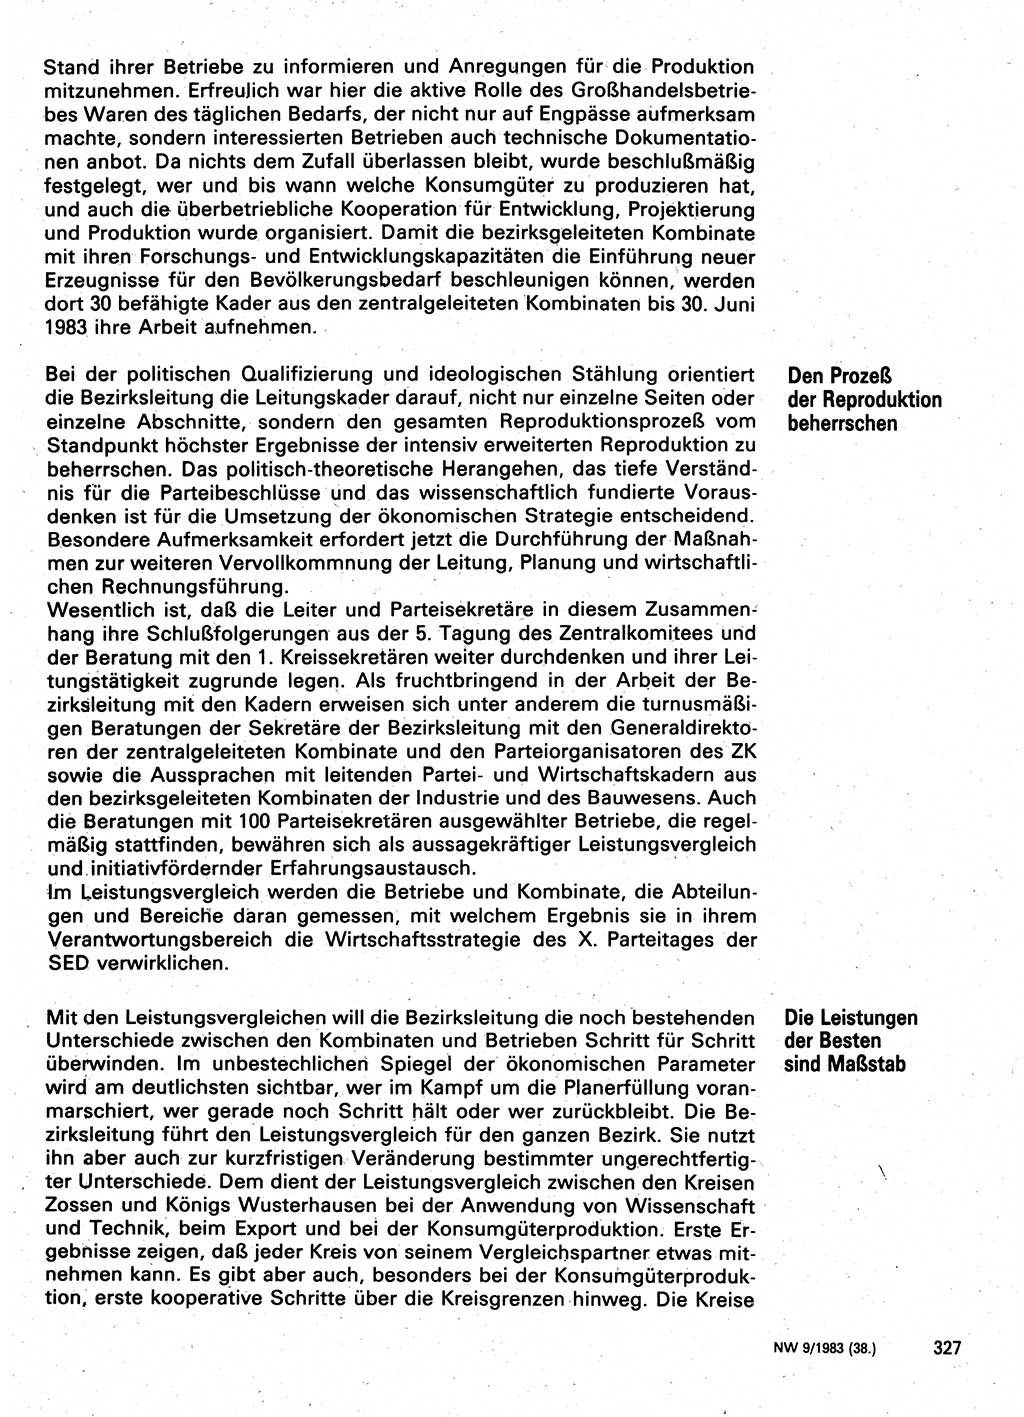 Neuer Weg (NW), Organ des Zentralkomitees (ZK) der SED (Sozialistische Einheitspartei Deutschlands) für Fragen des Parteilebens, 38. Jahrgang [Deutsche Demokratische Republik (DDR)] 1983, Seite 327 (NW ZK SED DDR 1983, S. 327)